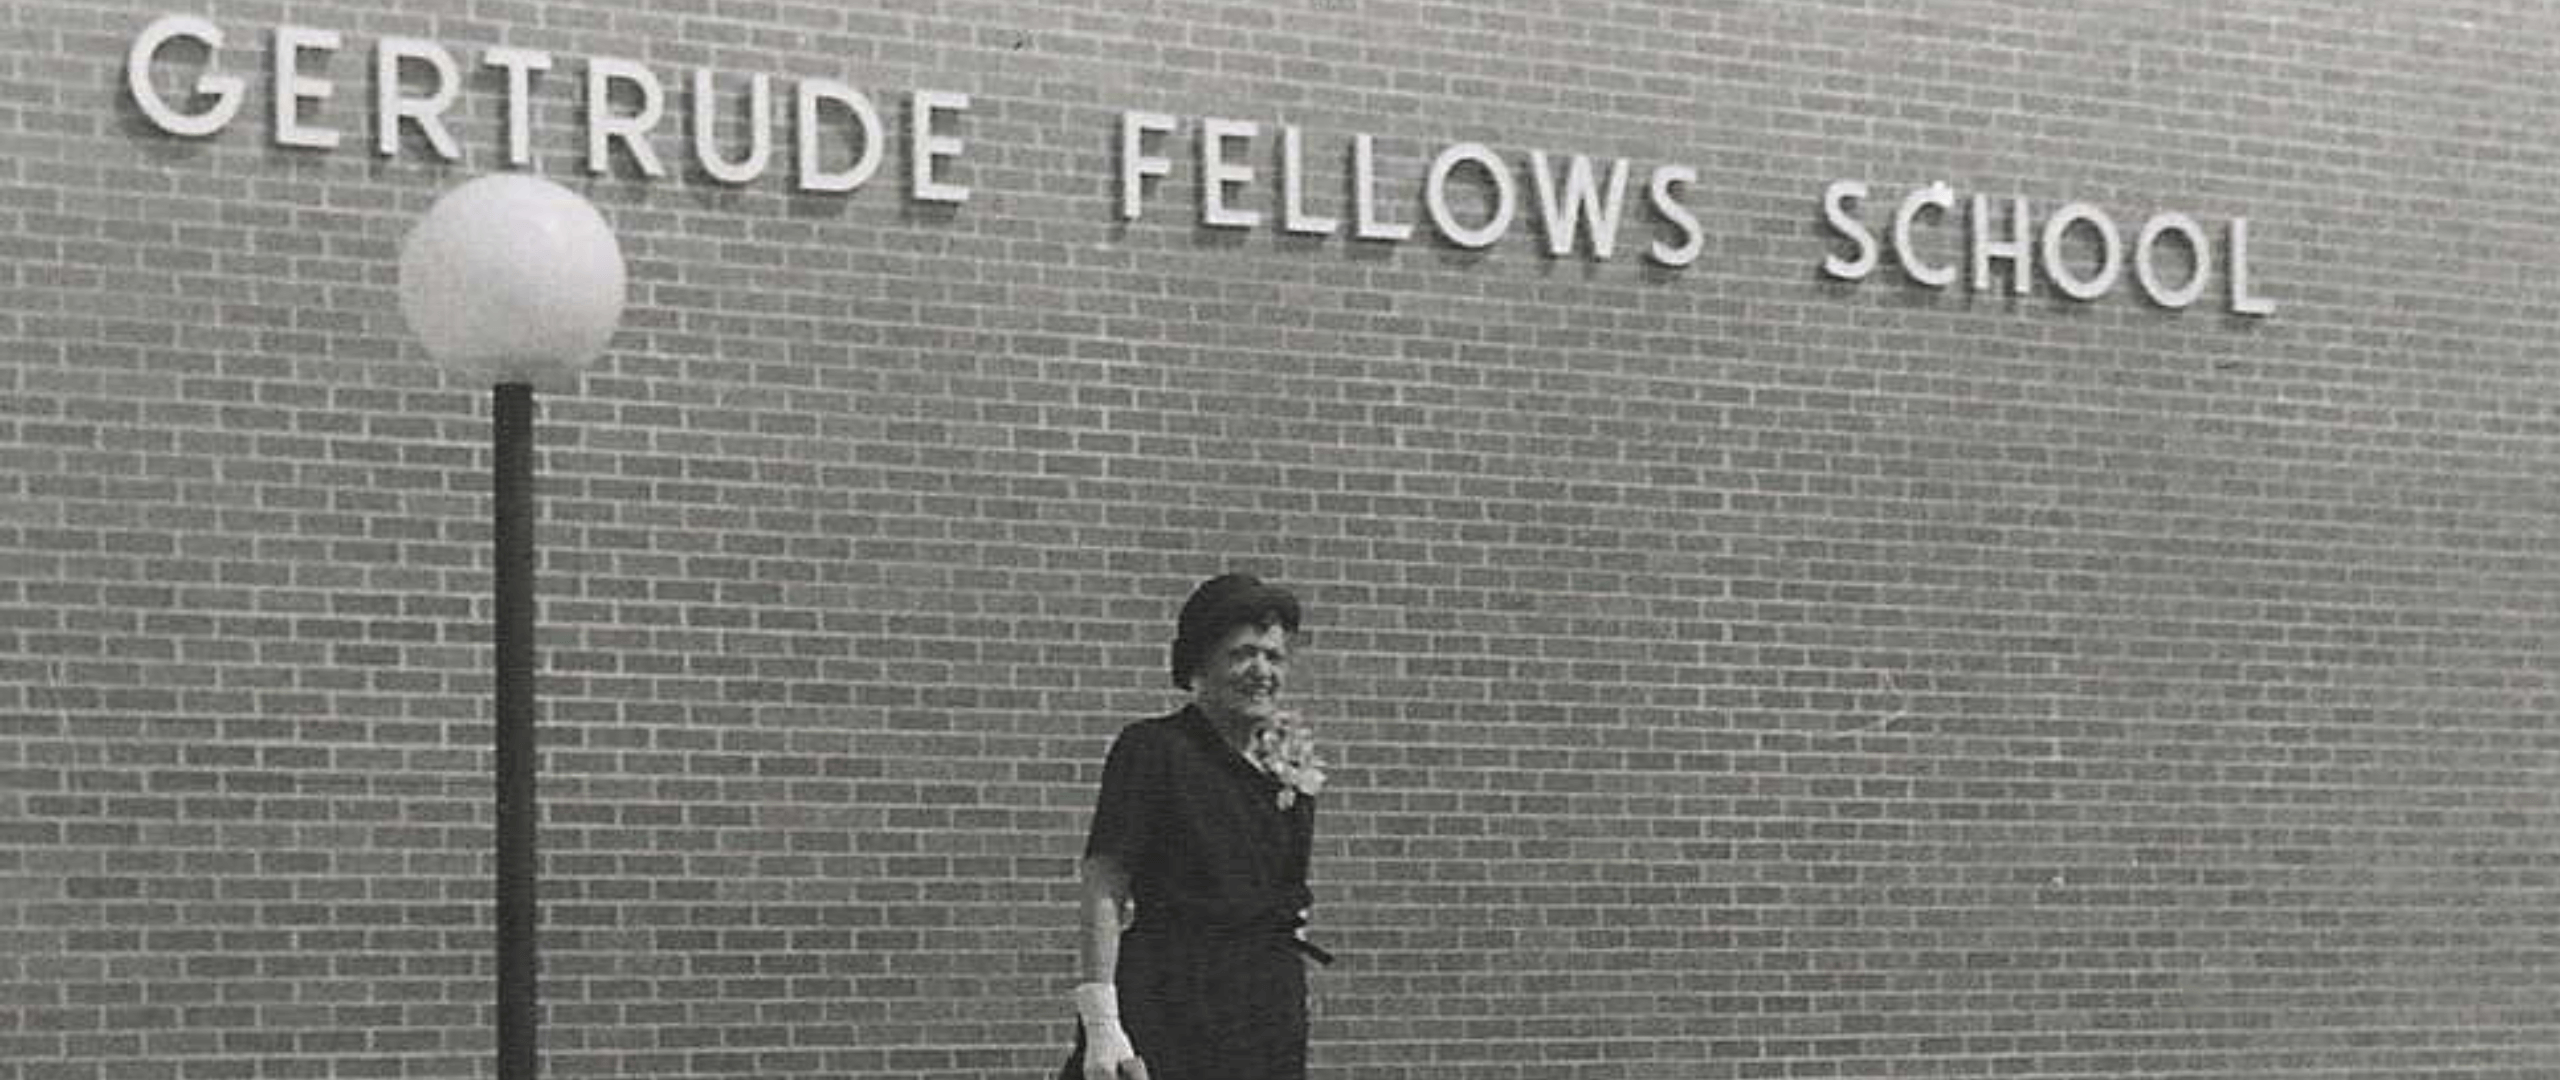 Women’s History Month: Gertrude Fellows